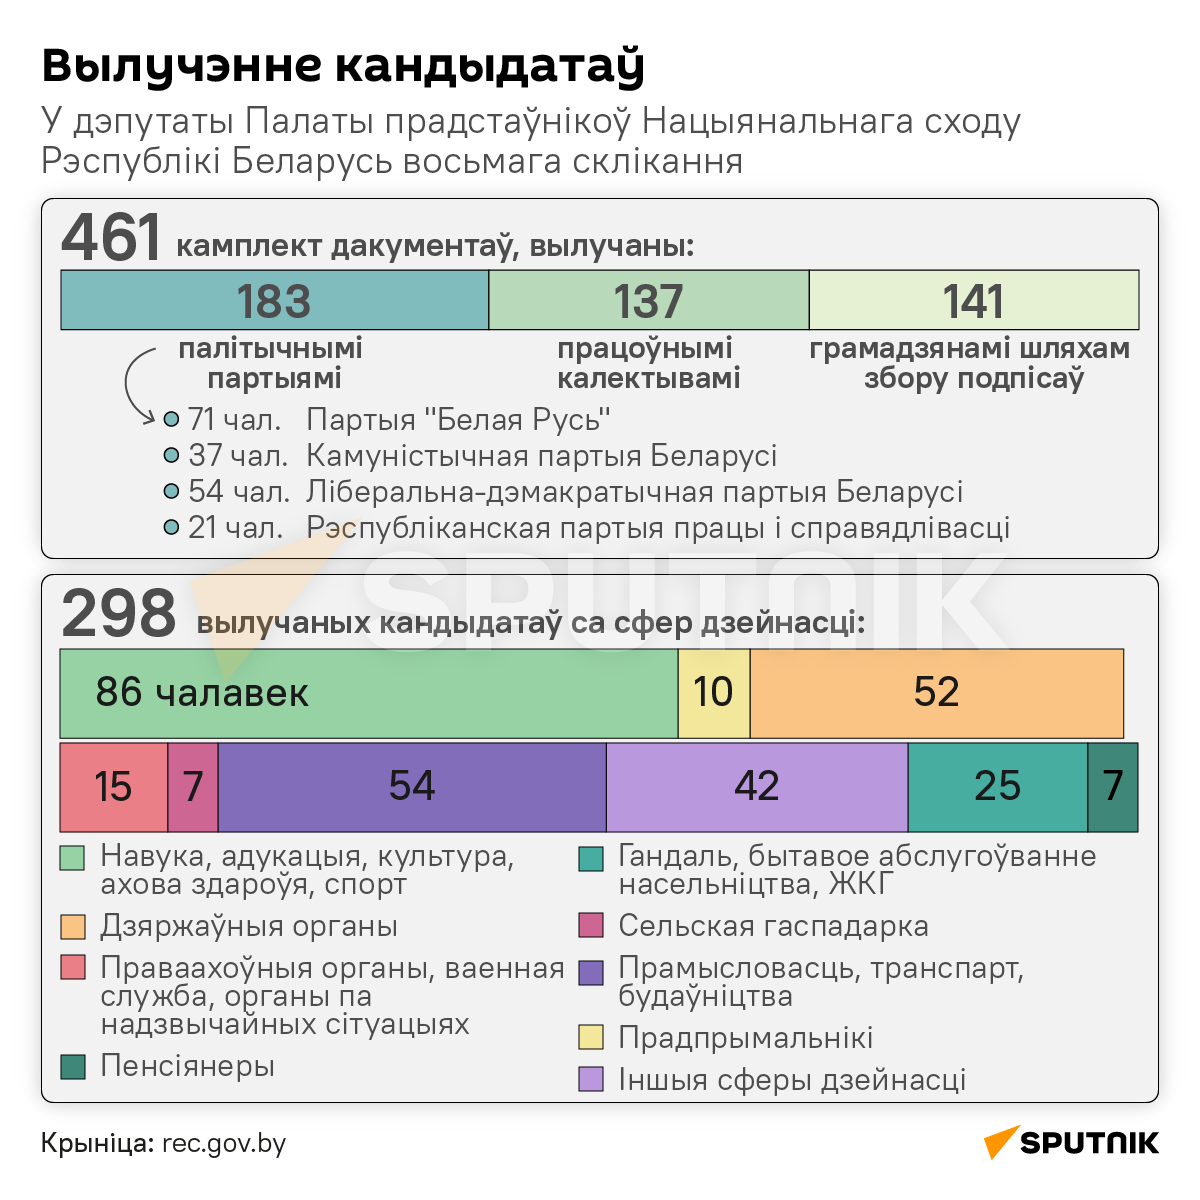 Вылучэнне кандыдатаў у беларускі парламент – інфаграфіка 2 - Sputnik Беларусь